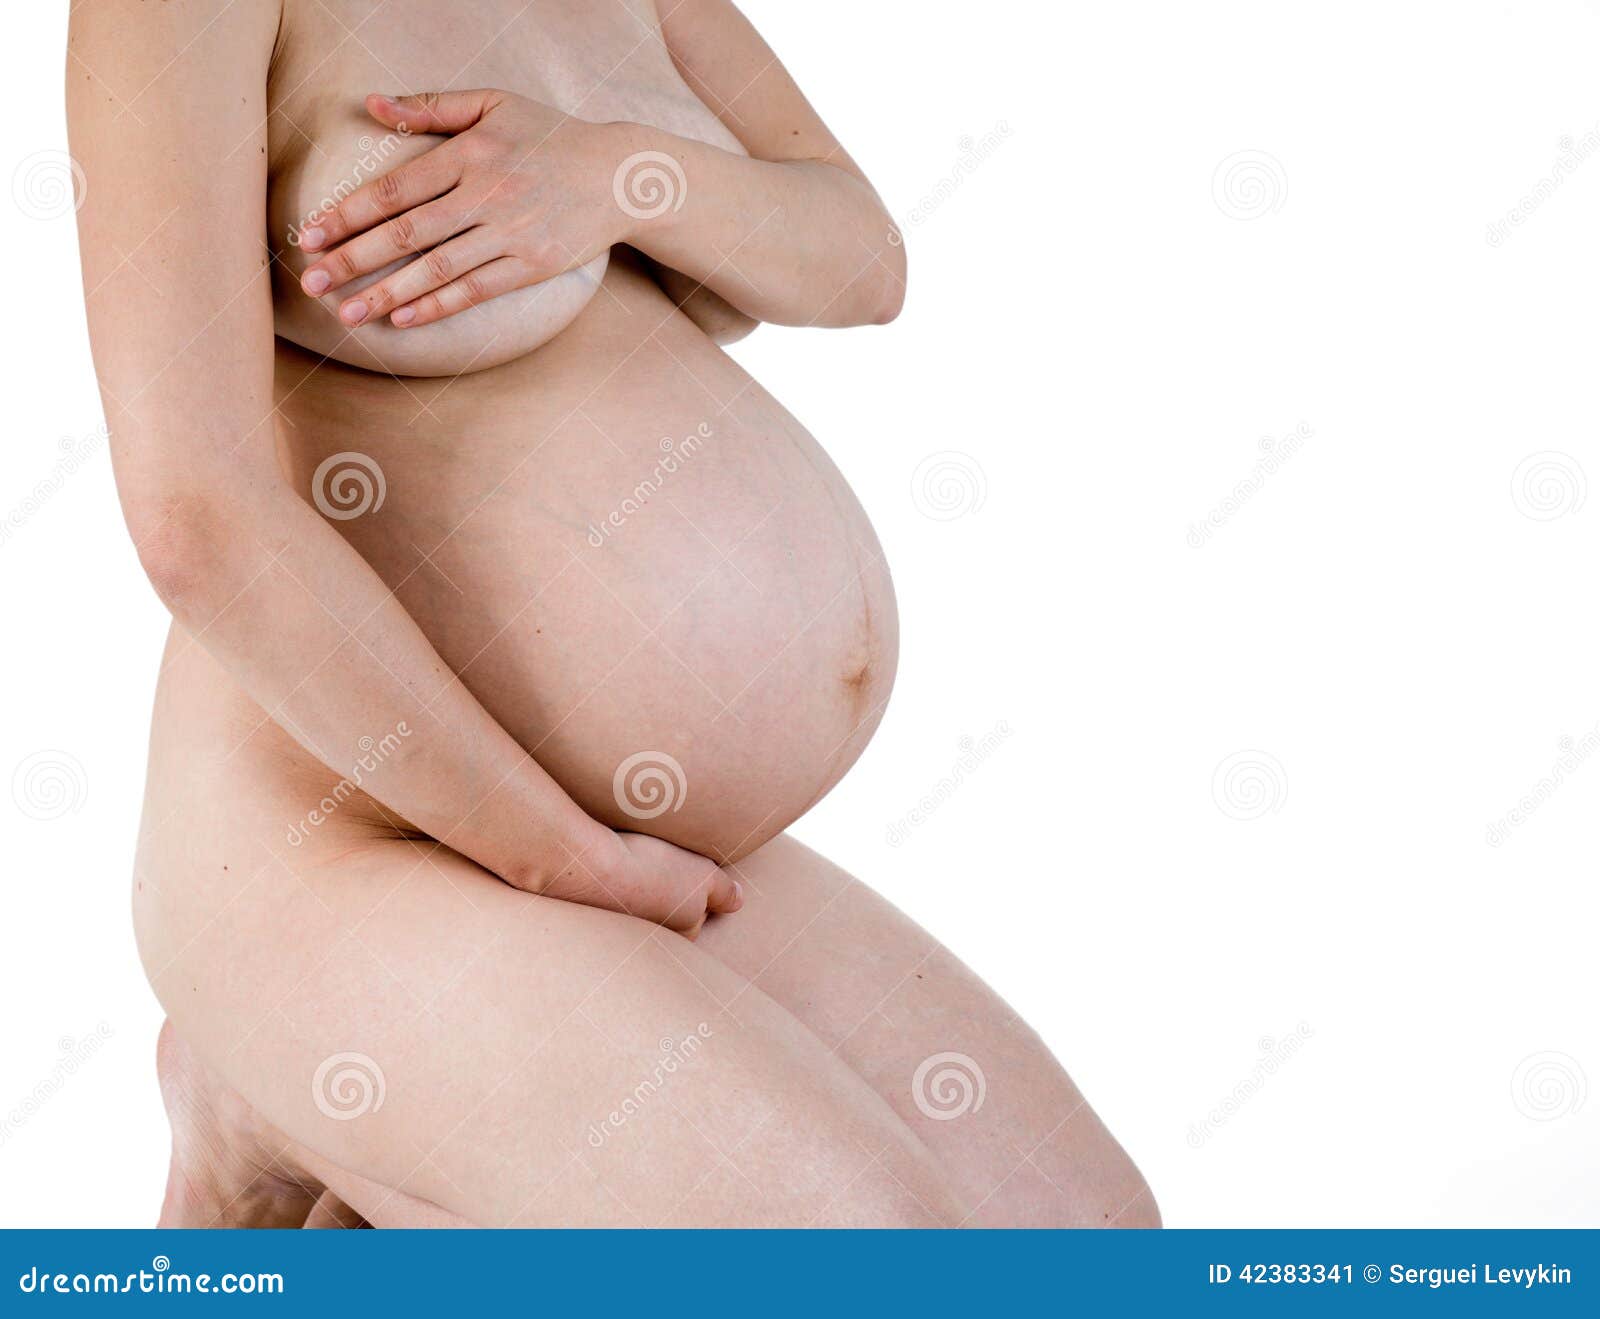 фигура беременной голые фото 71